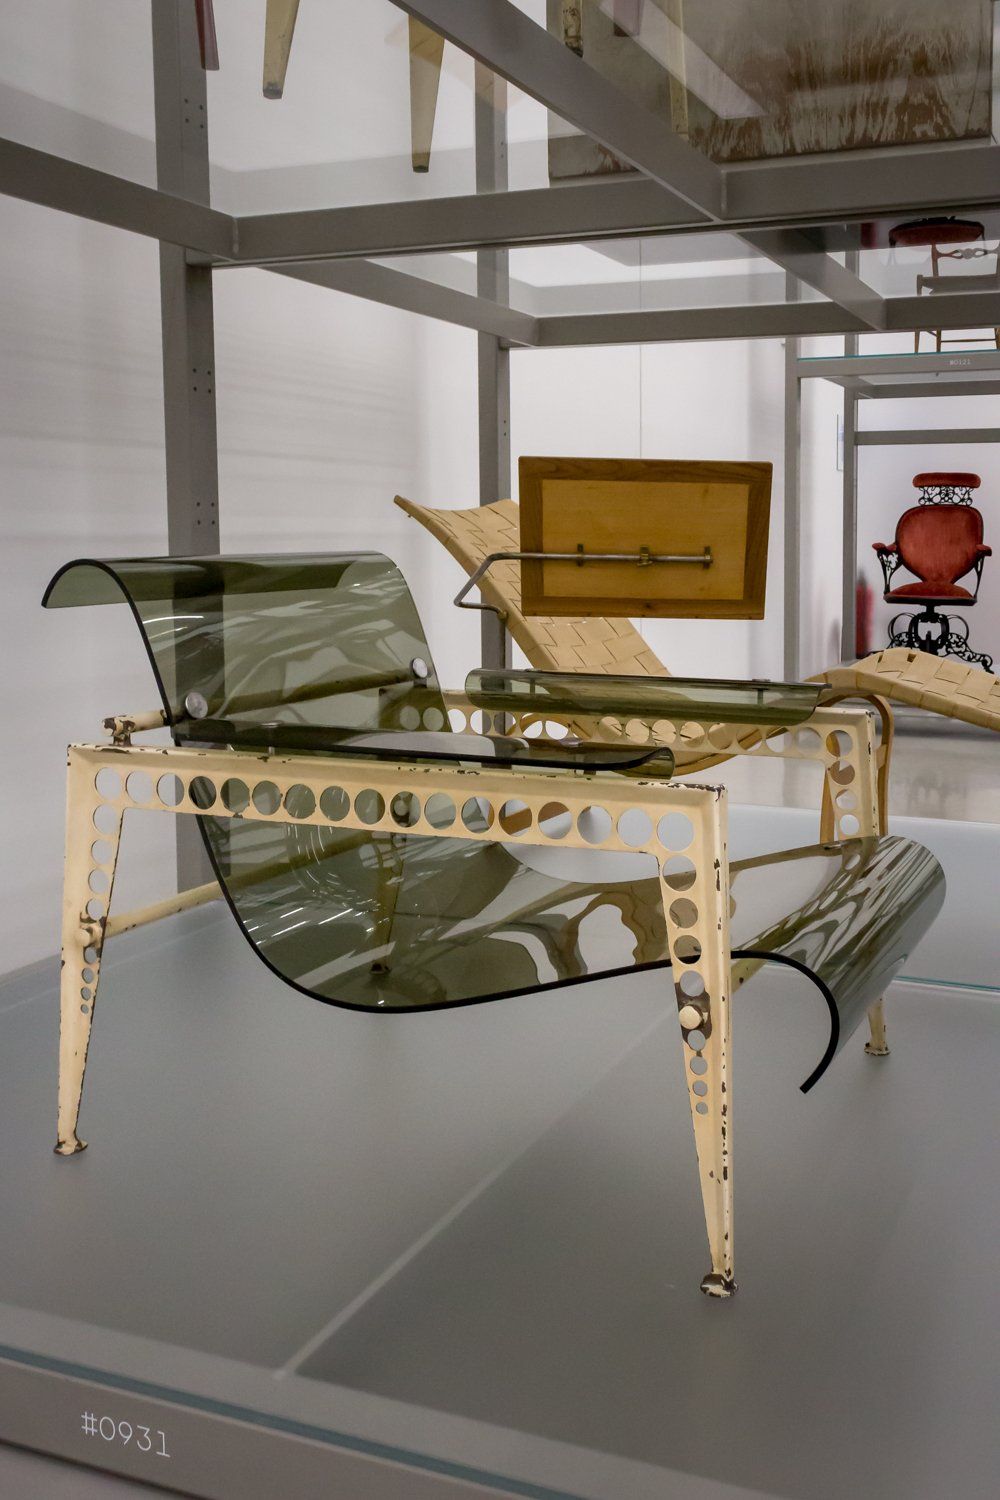 Jean Prouve’s Garden Chair for the UAM Pavilion